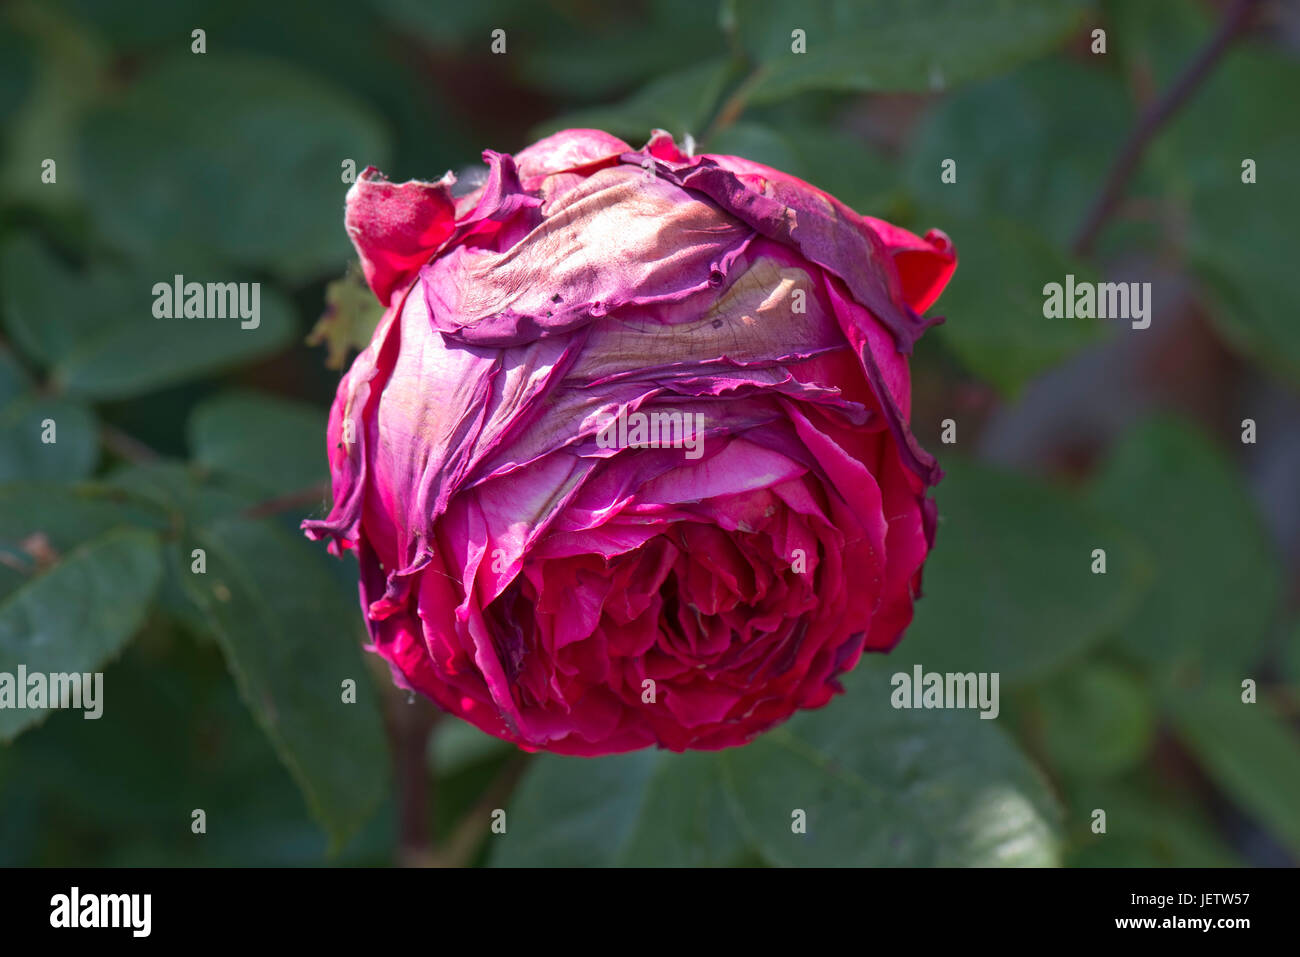 Grauschimmel, Botrytis Cinerea, Auswirkungen auf eine große rote Rosenblüte nach Regen und feuchten Wetter, Berkshire, Juni zur Blüte kommen Stockfoto